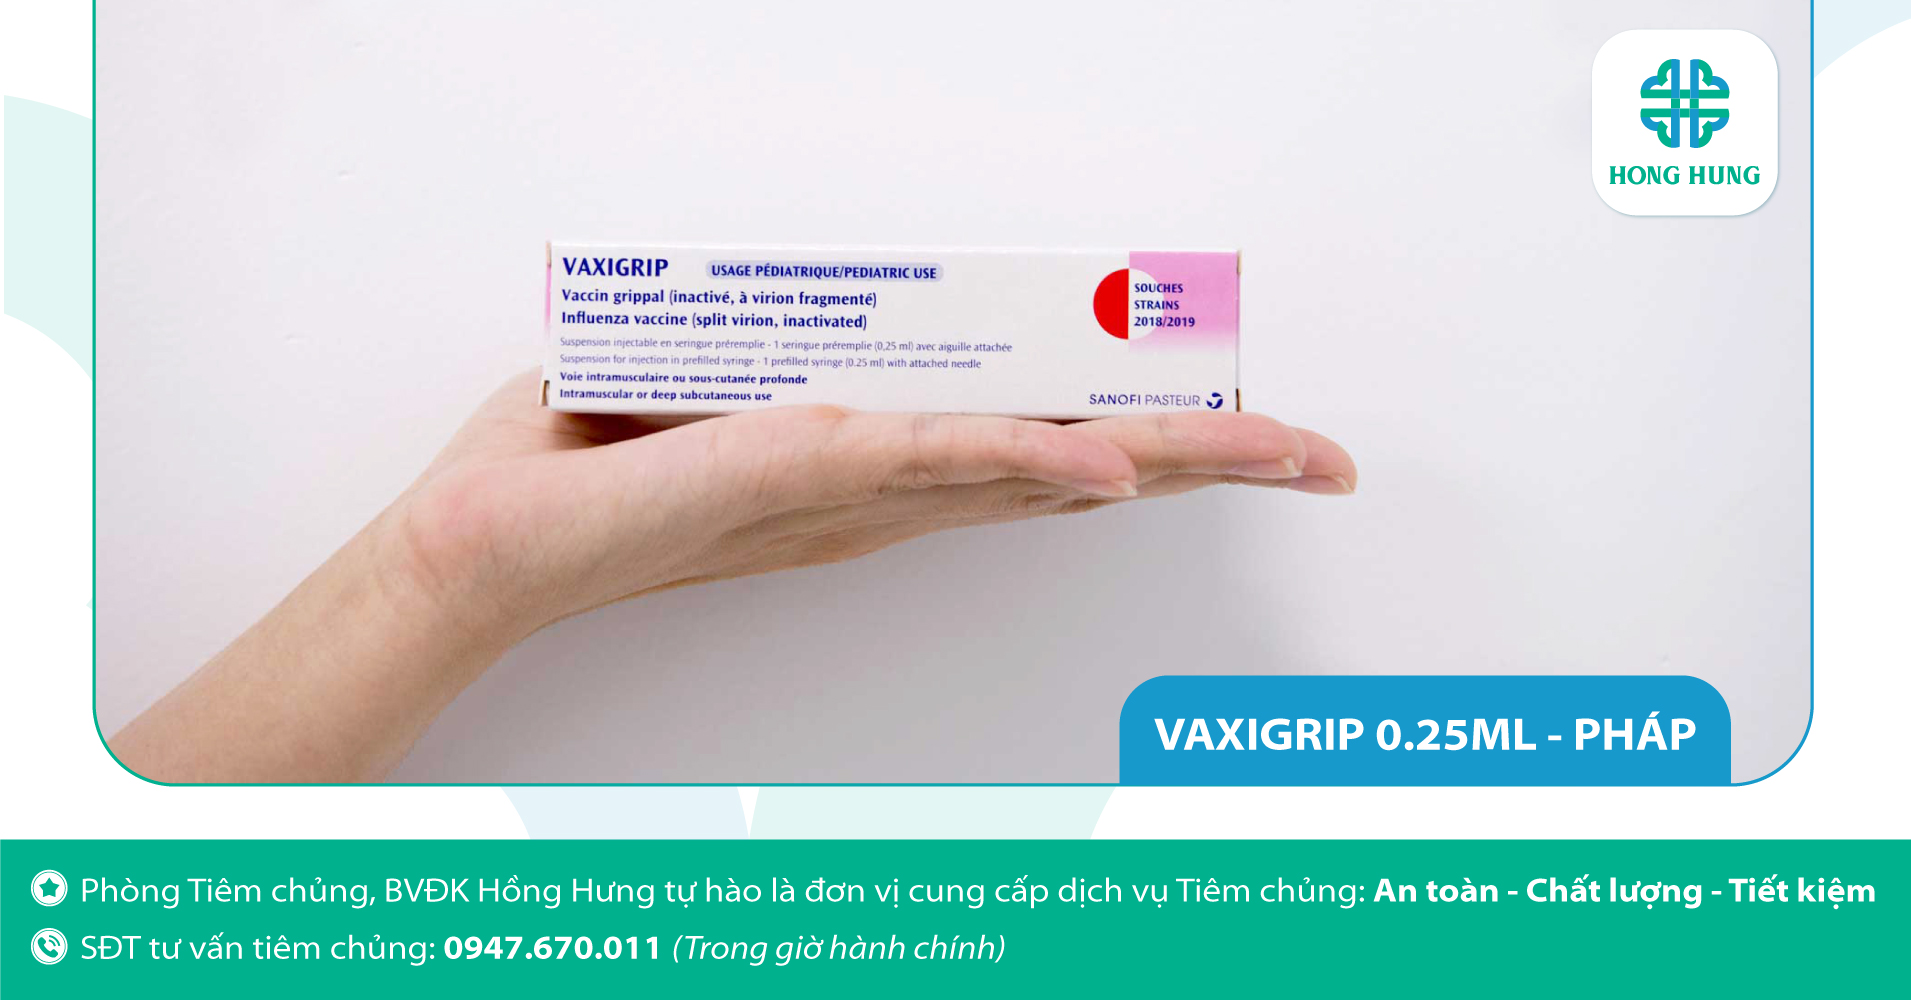 2. Vắc-xin chích ngừa cúm, vắc-xin VAXIGRIP 0.25ml (Pháp)